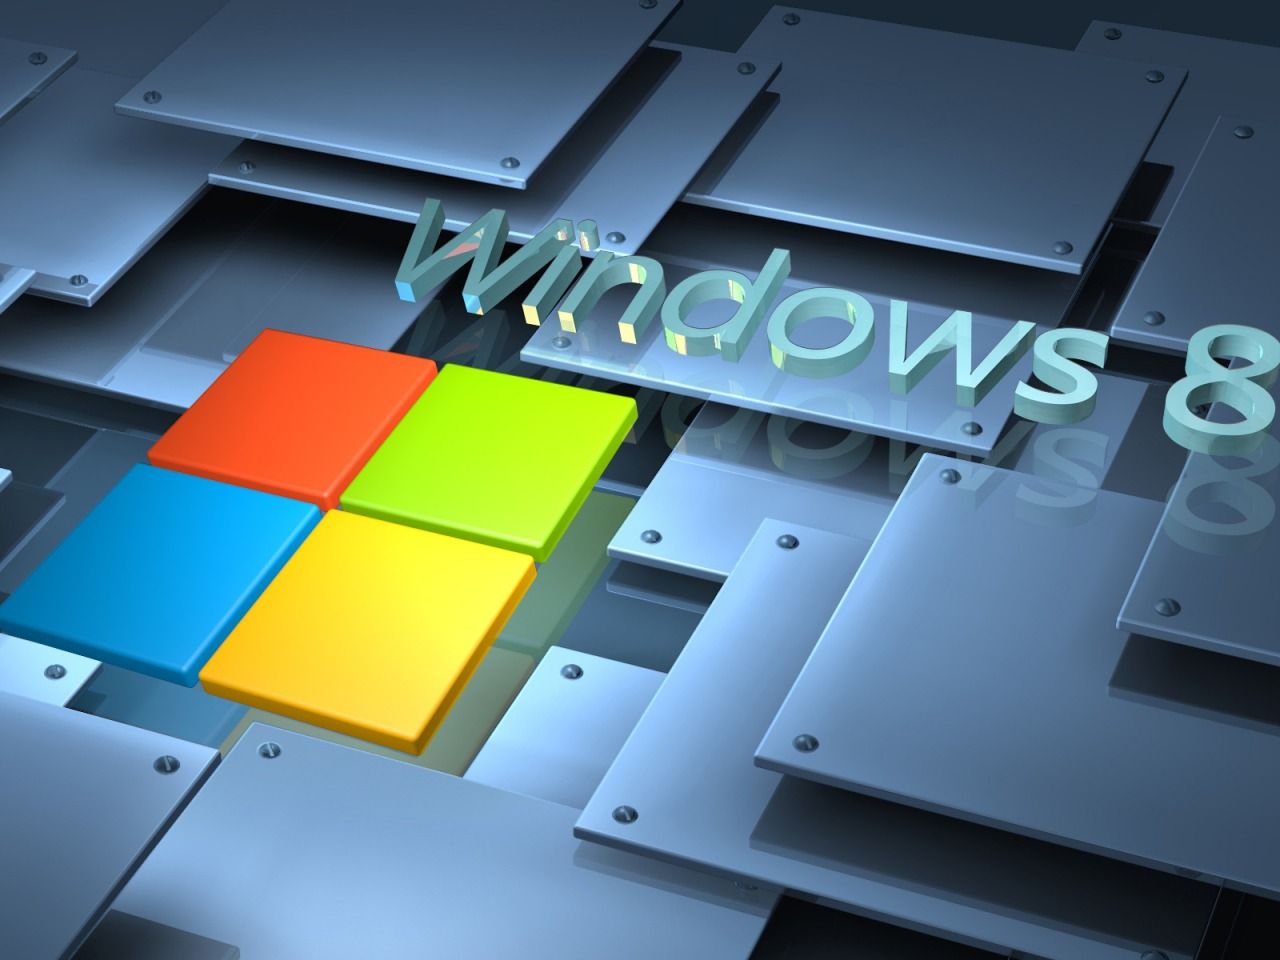 3D Windows 8 1280 x 960 Wallpaper